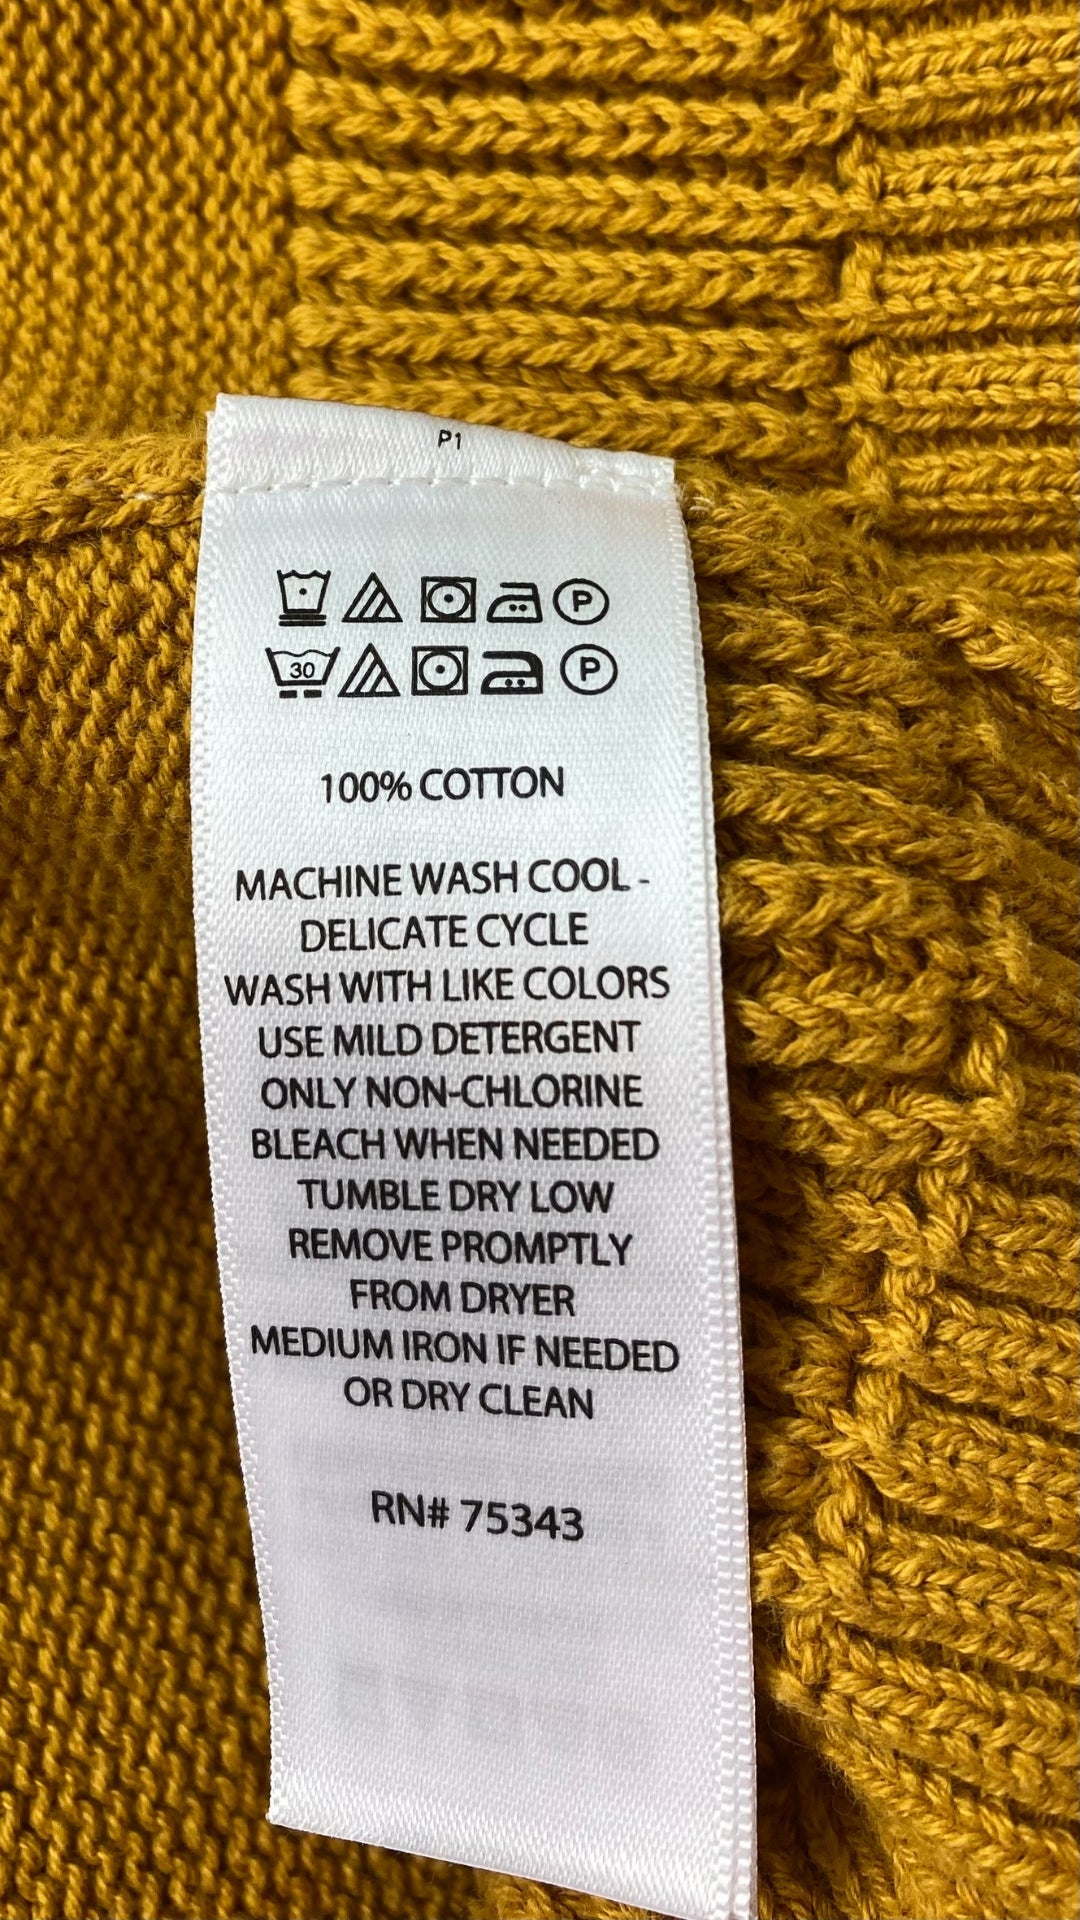 Chandail tricot manche cape ocre Joie, taille 3X. Vue de l'étiquette de composition et entretien.